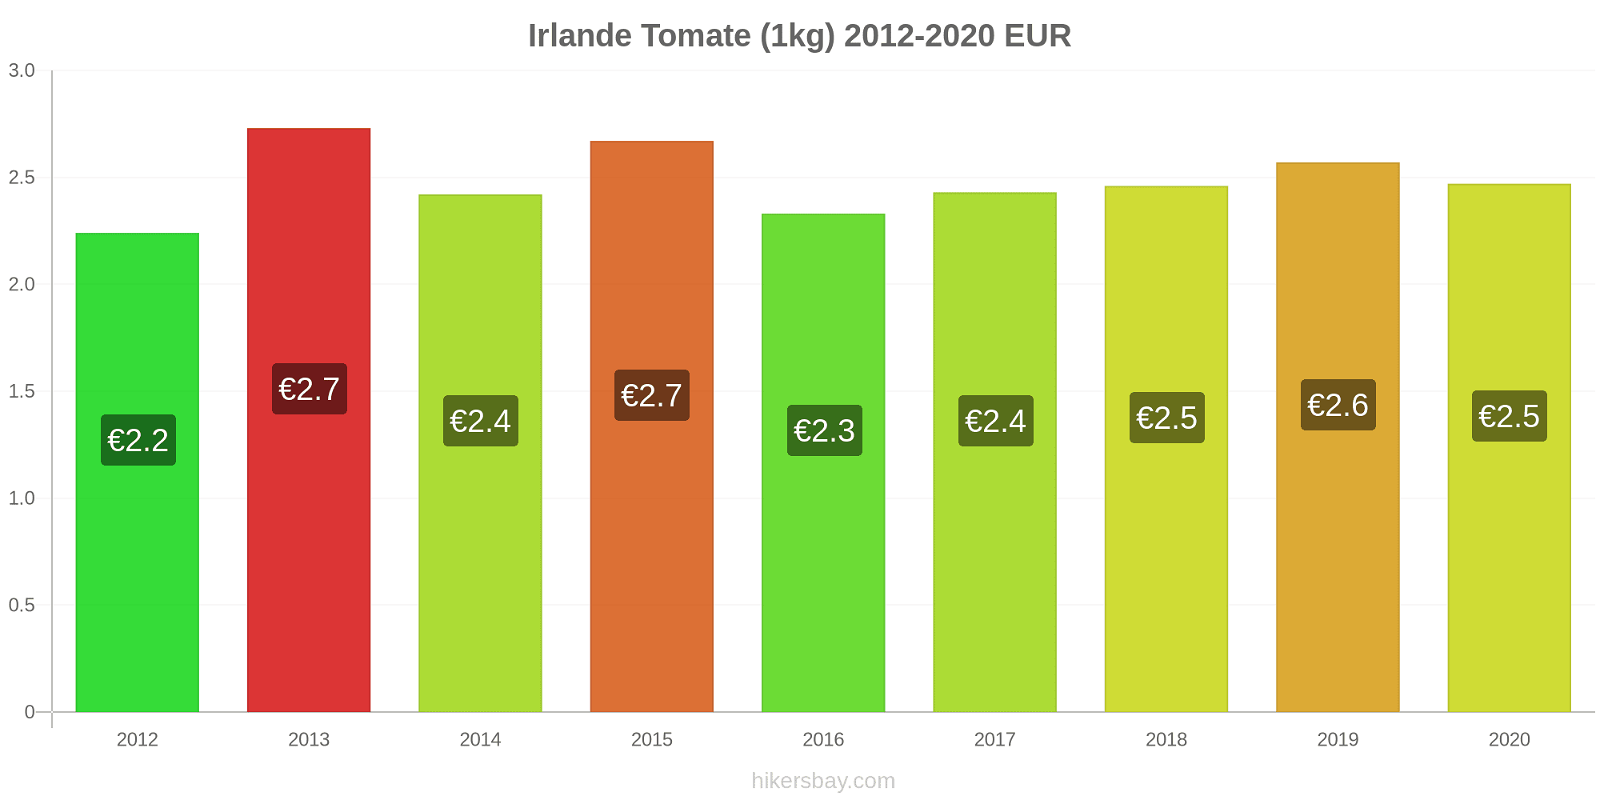 Irlande changements de prix Tomate (1kg) hikersbay.com